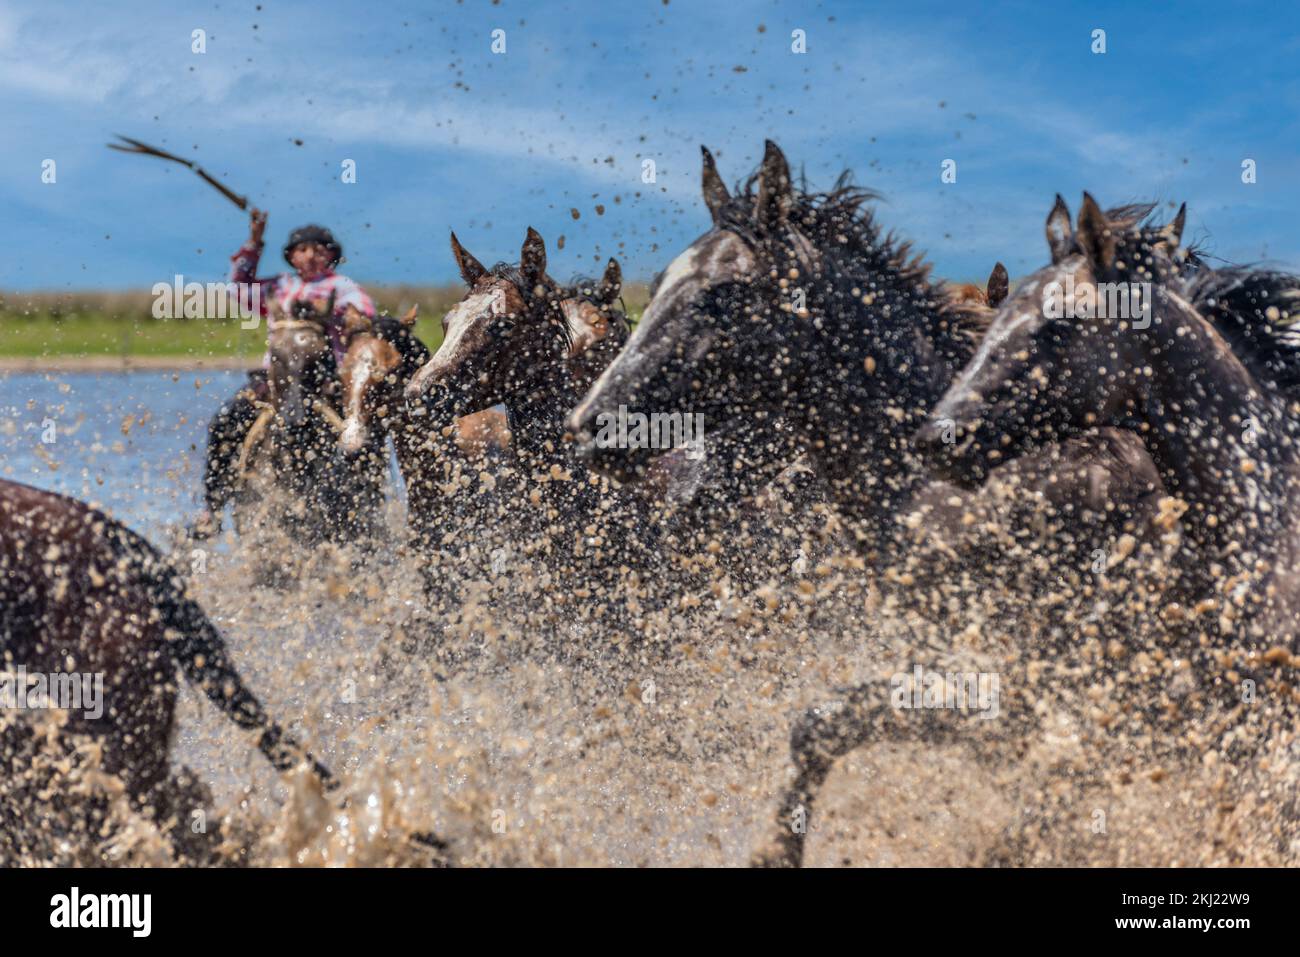 Esquina, Corrientes, Argentine - 29 octobre 2022: Argentine gaucho herdant des chevaux sauvages pour traverser la rivière. Banque D'Images